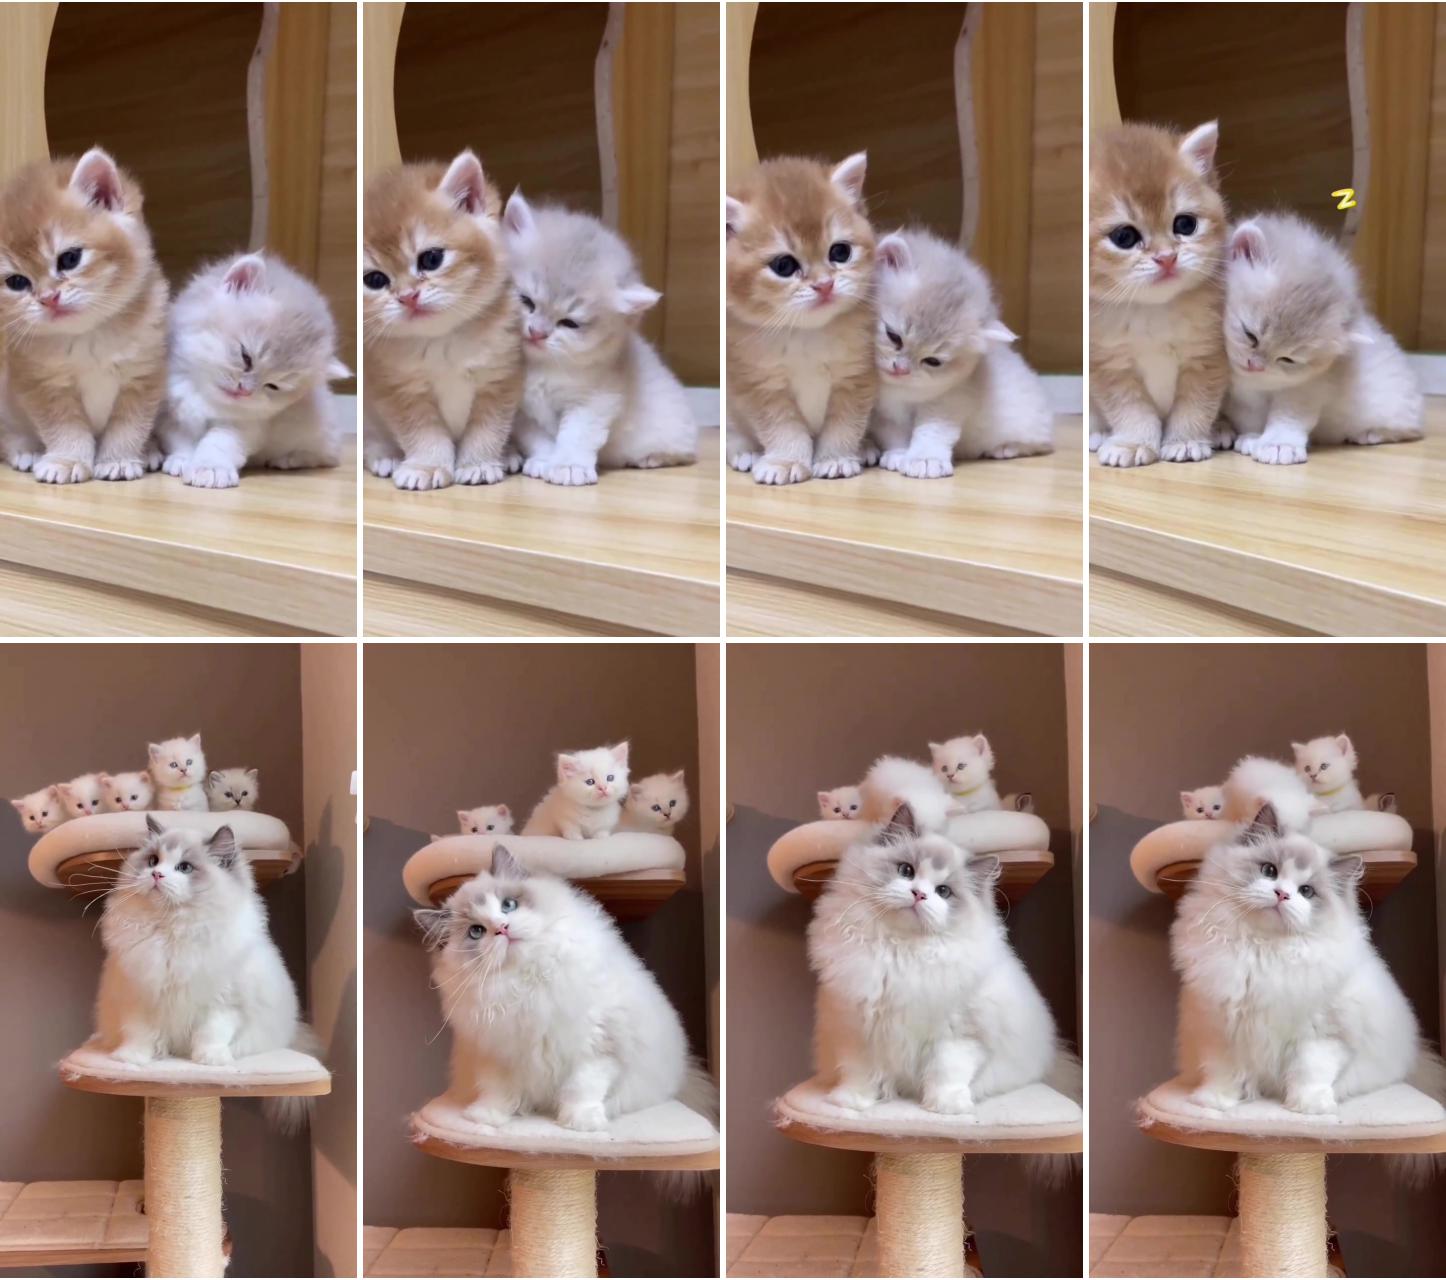 Cute kitties; cute little kittens